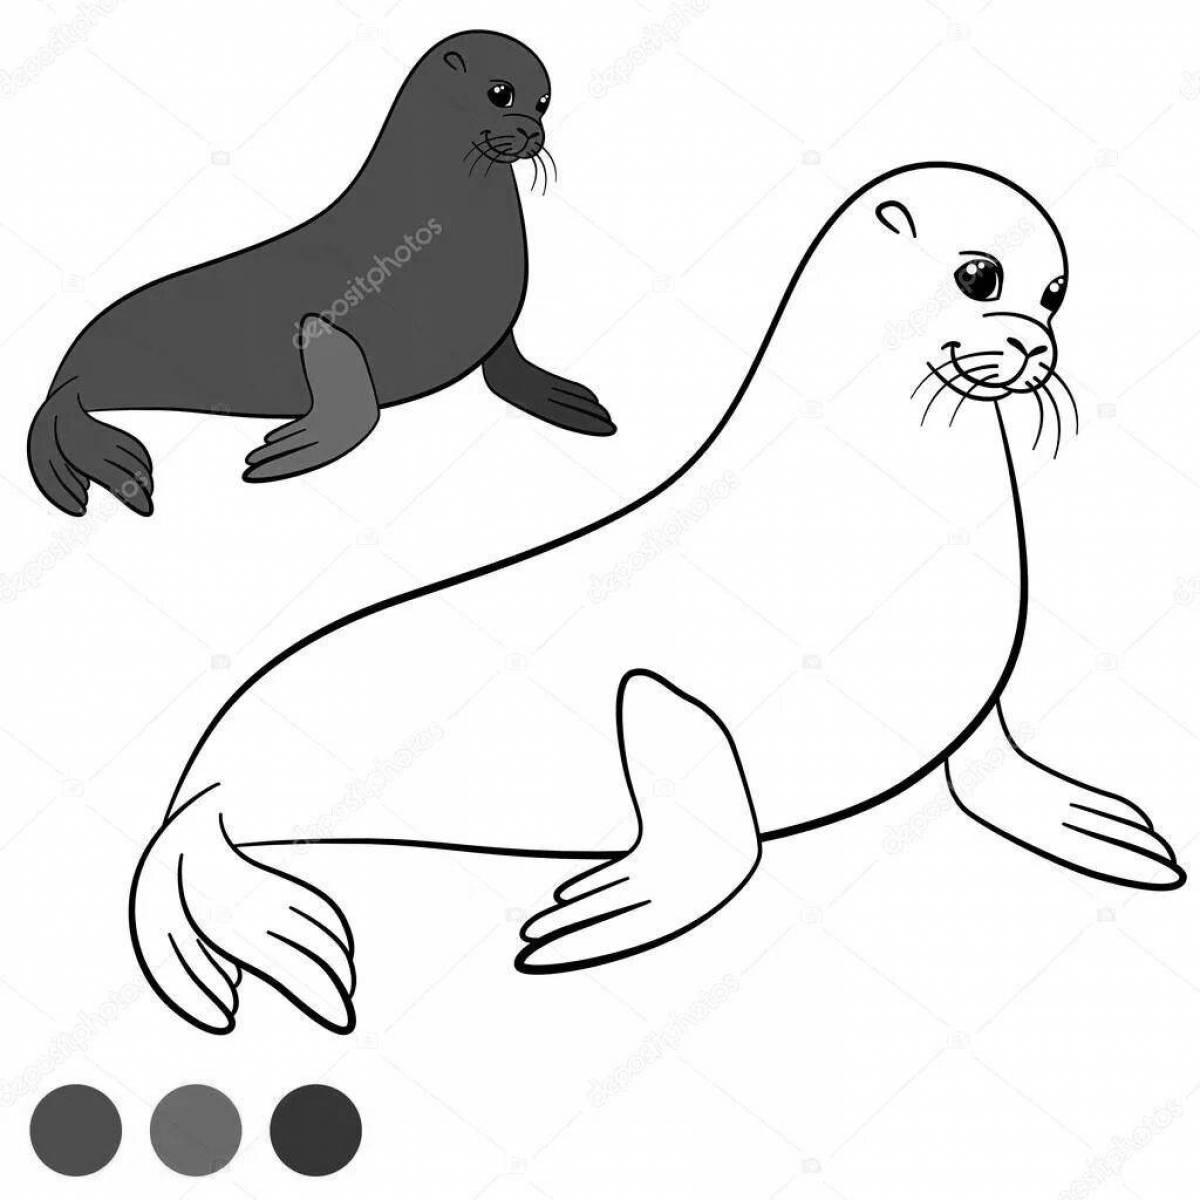 Сказочная страница раскраски обыкновенного тюленя